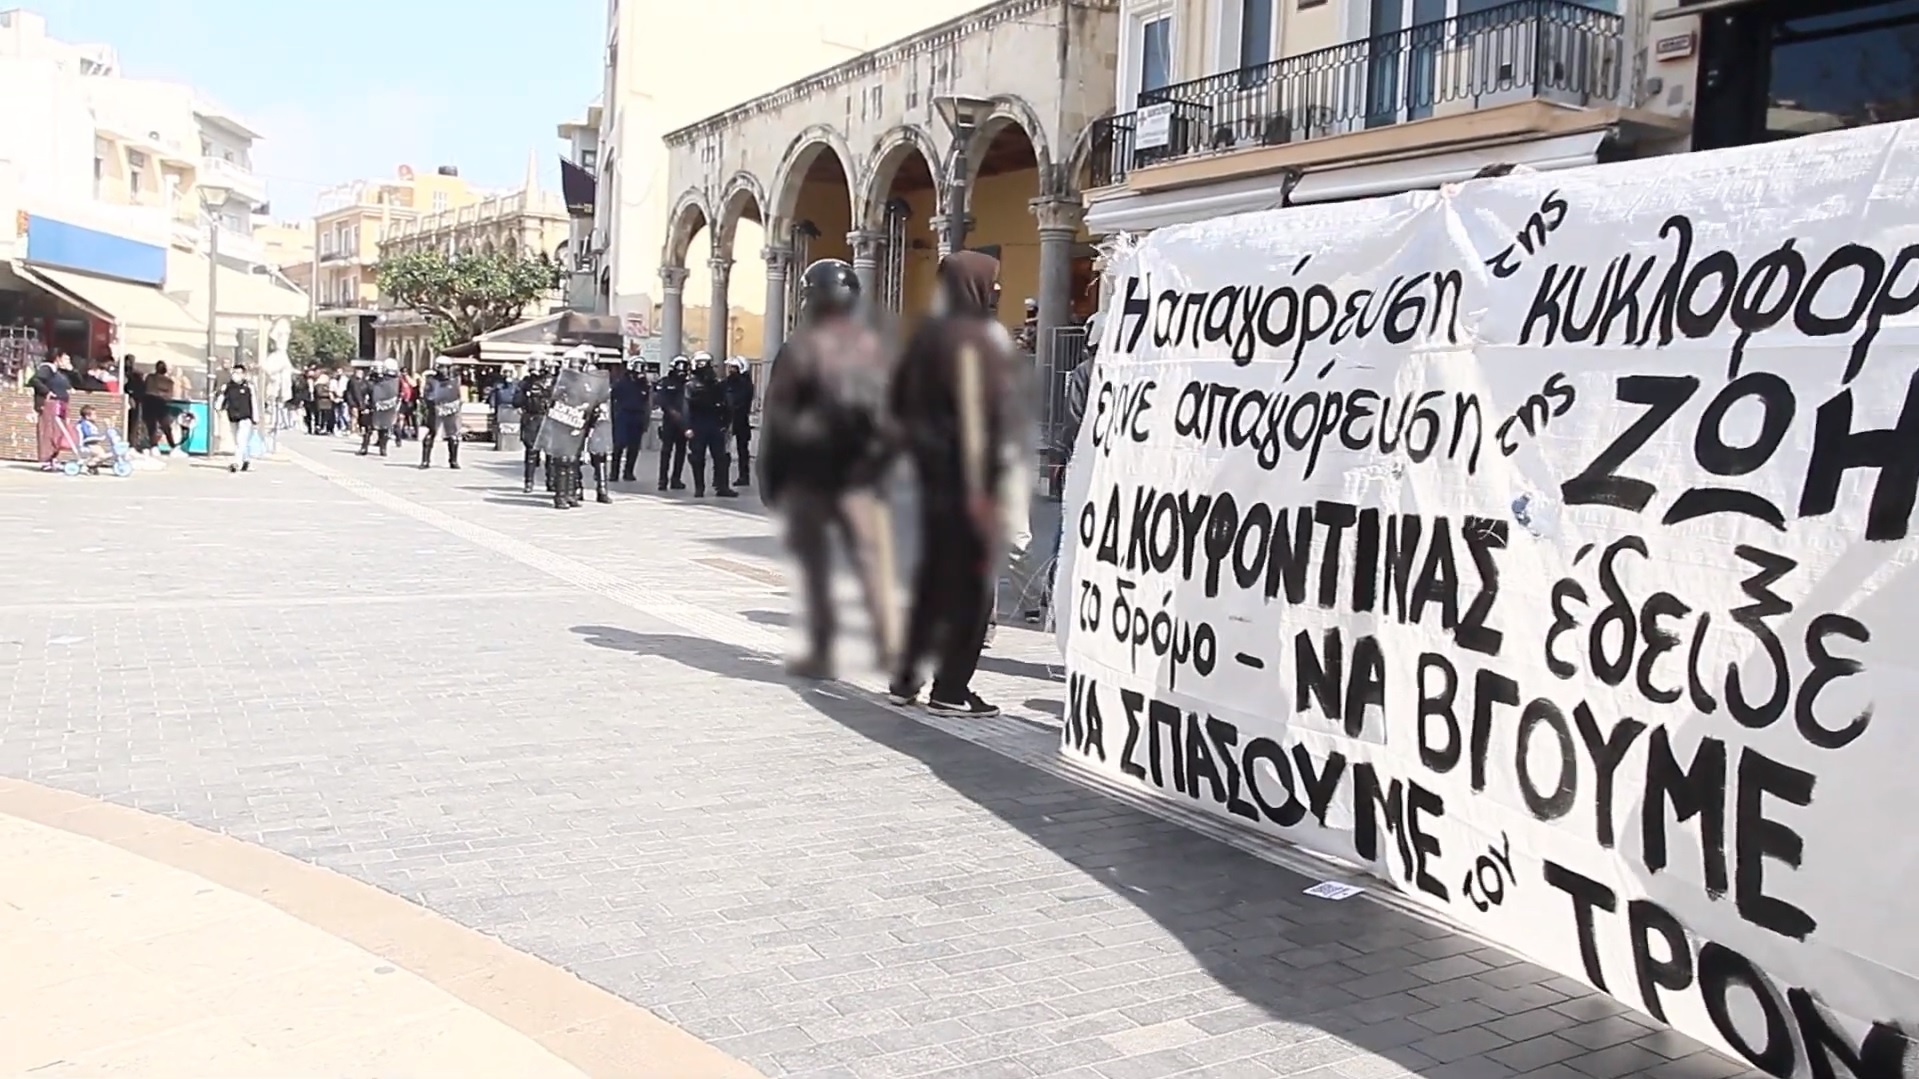 Συγκέντρωση και σπάσιμο της καταστολής στο Ηράκλειο για τον Δ. Κουφοντίνα [VIDEO]